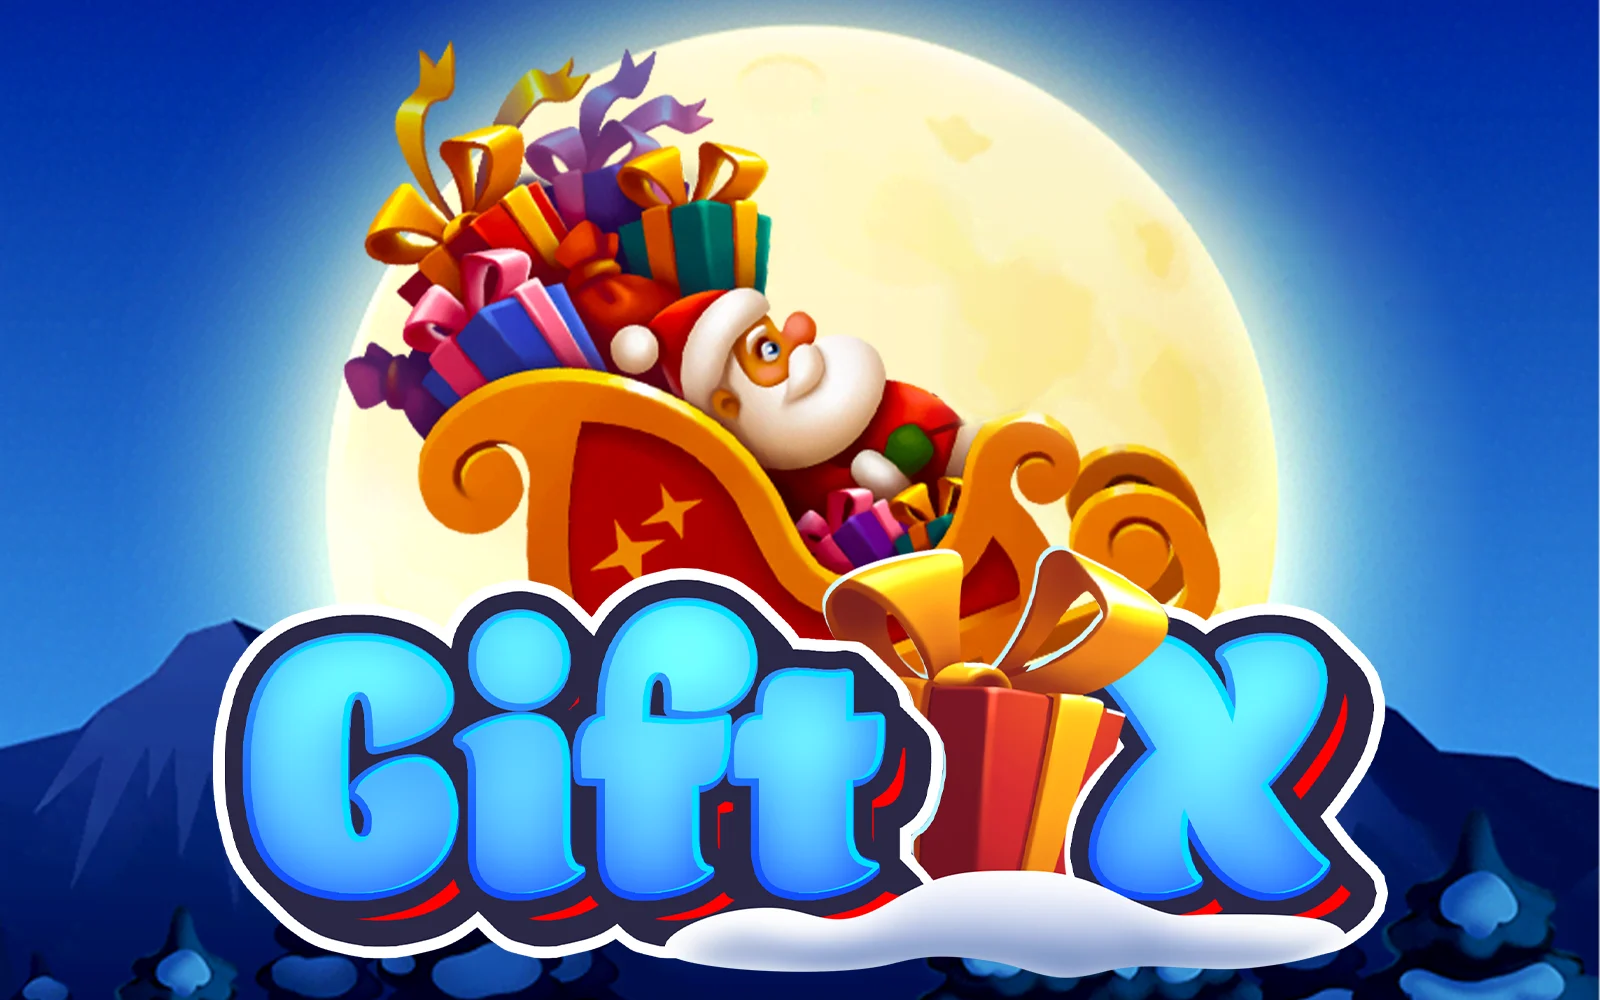 Грайте у Gift X в онлайн-казино Starcasino.be